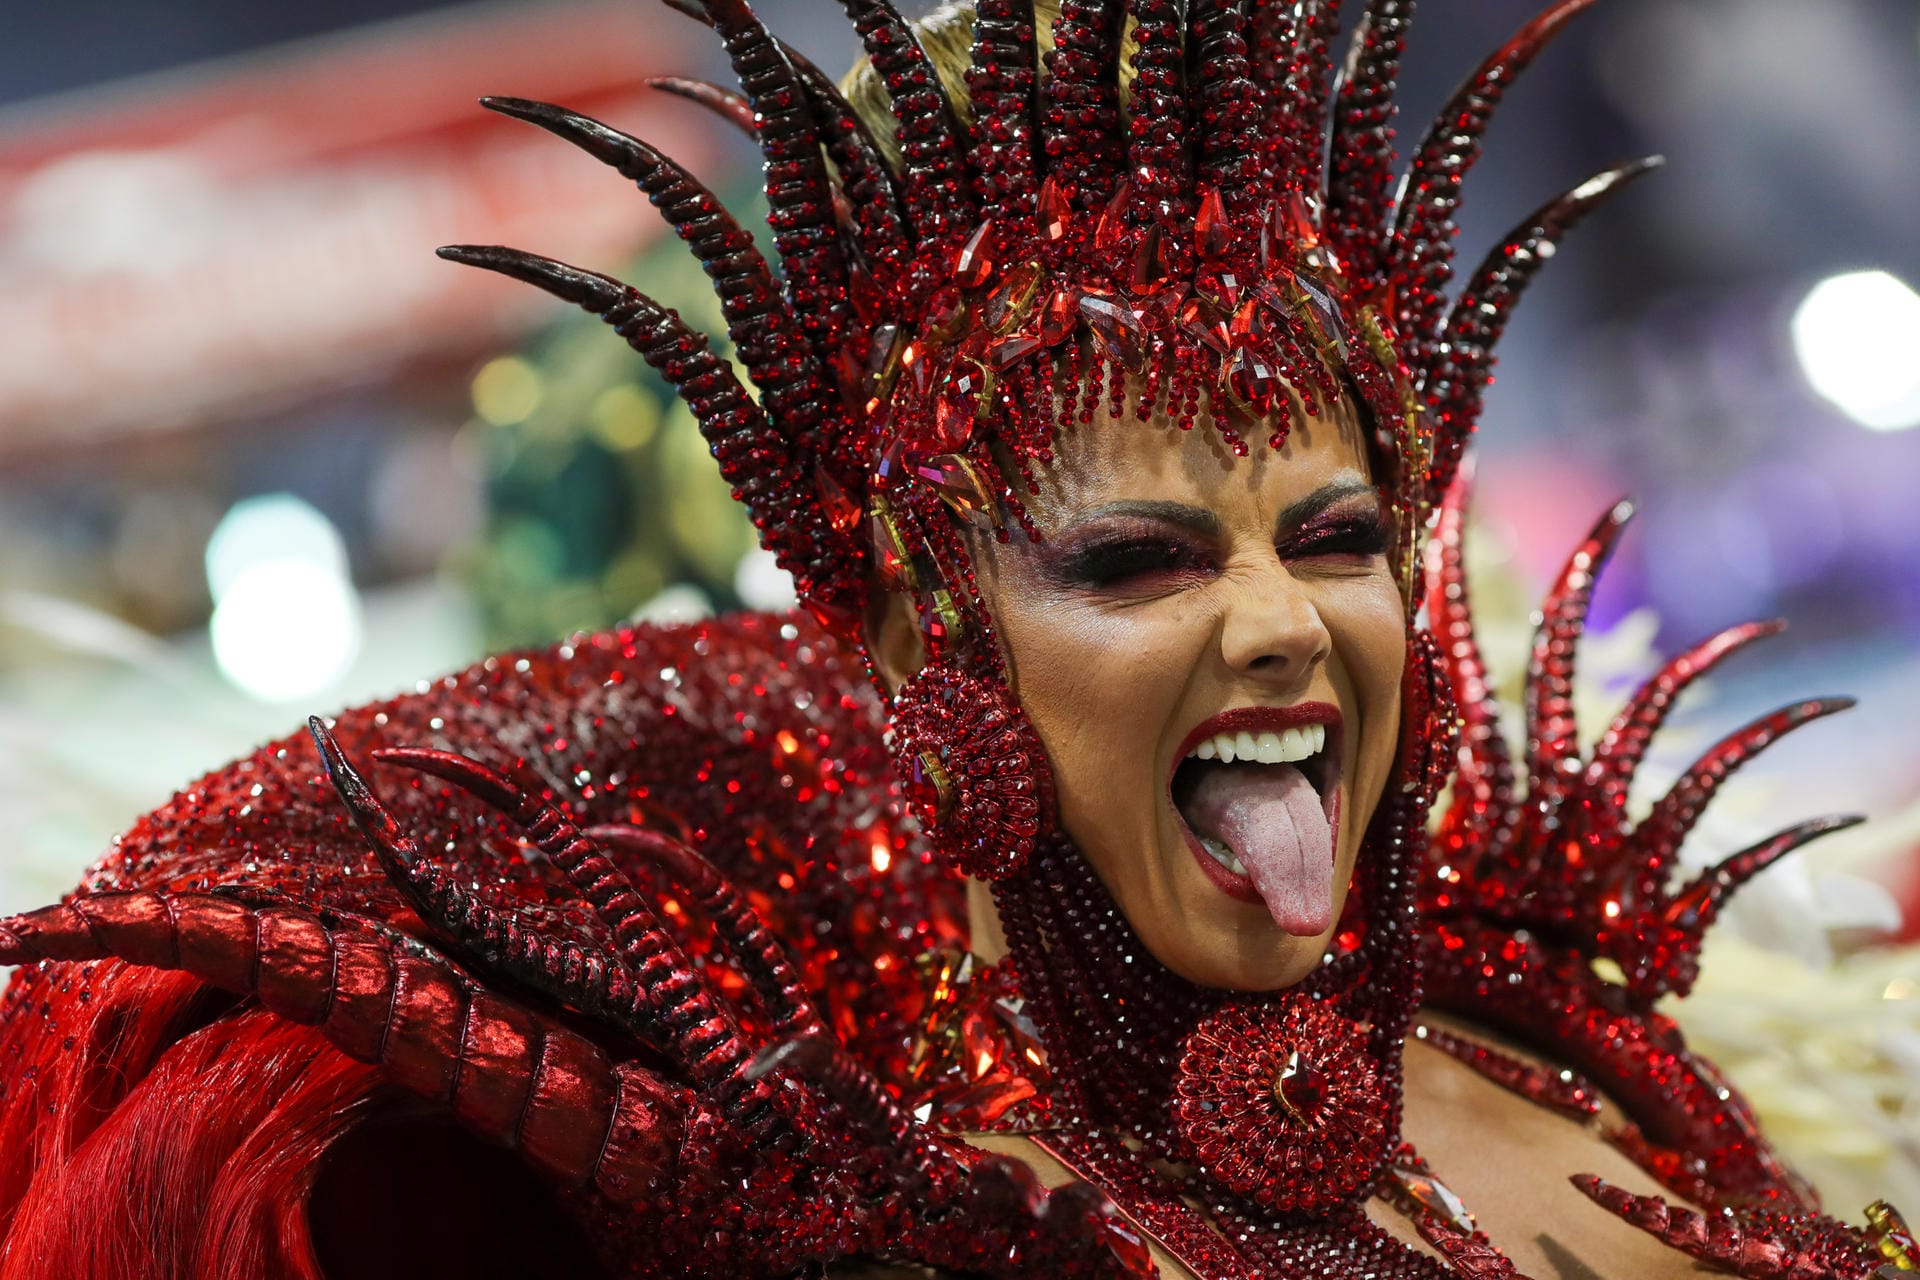 Performerin in Sao Paulo: Neben Rio de Janeiro ist Sao Paulo die zweite Karnevalshochburg in Brasilien.